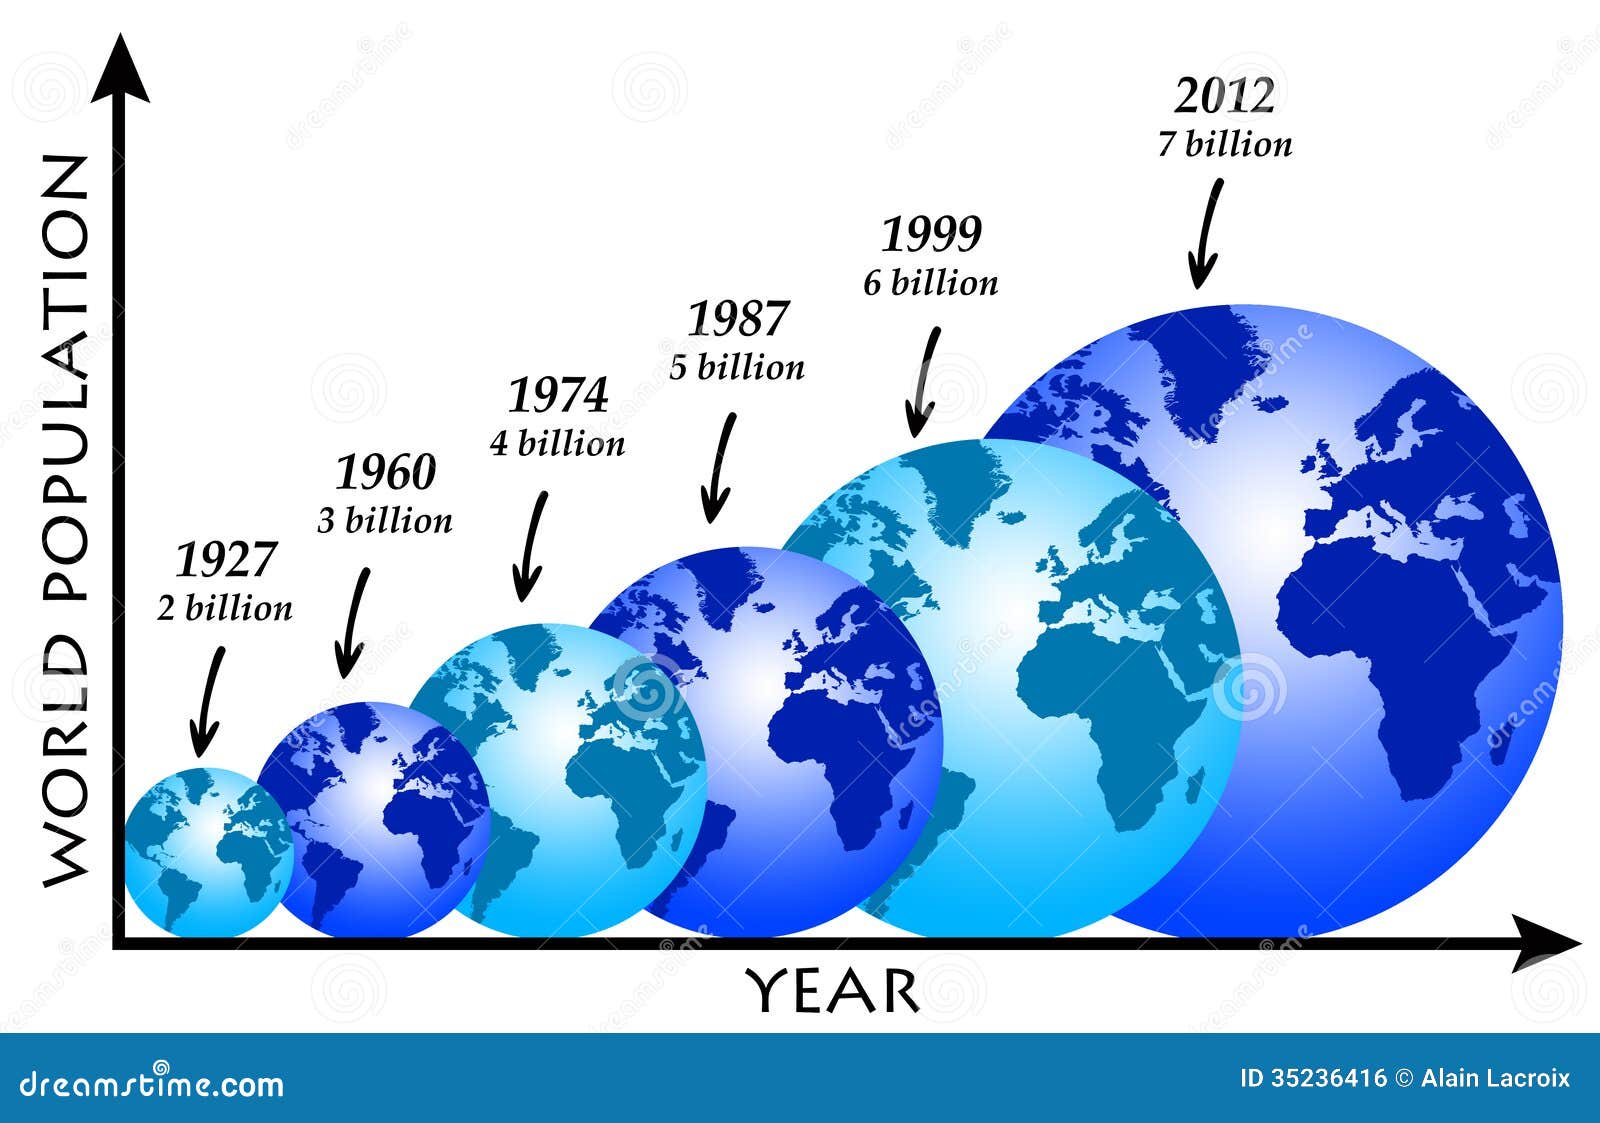 人口老龄化_2012全球人口